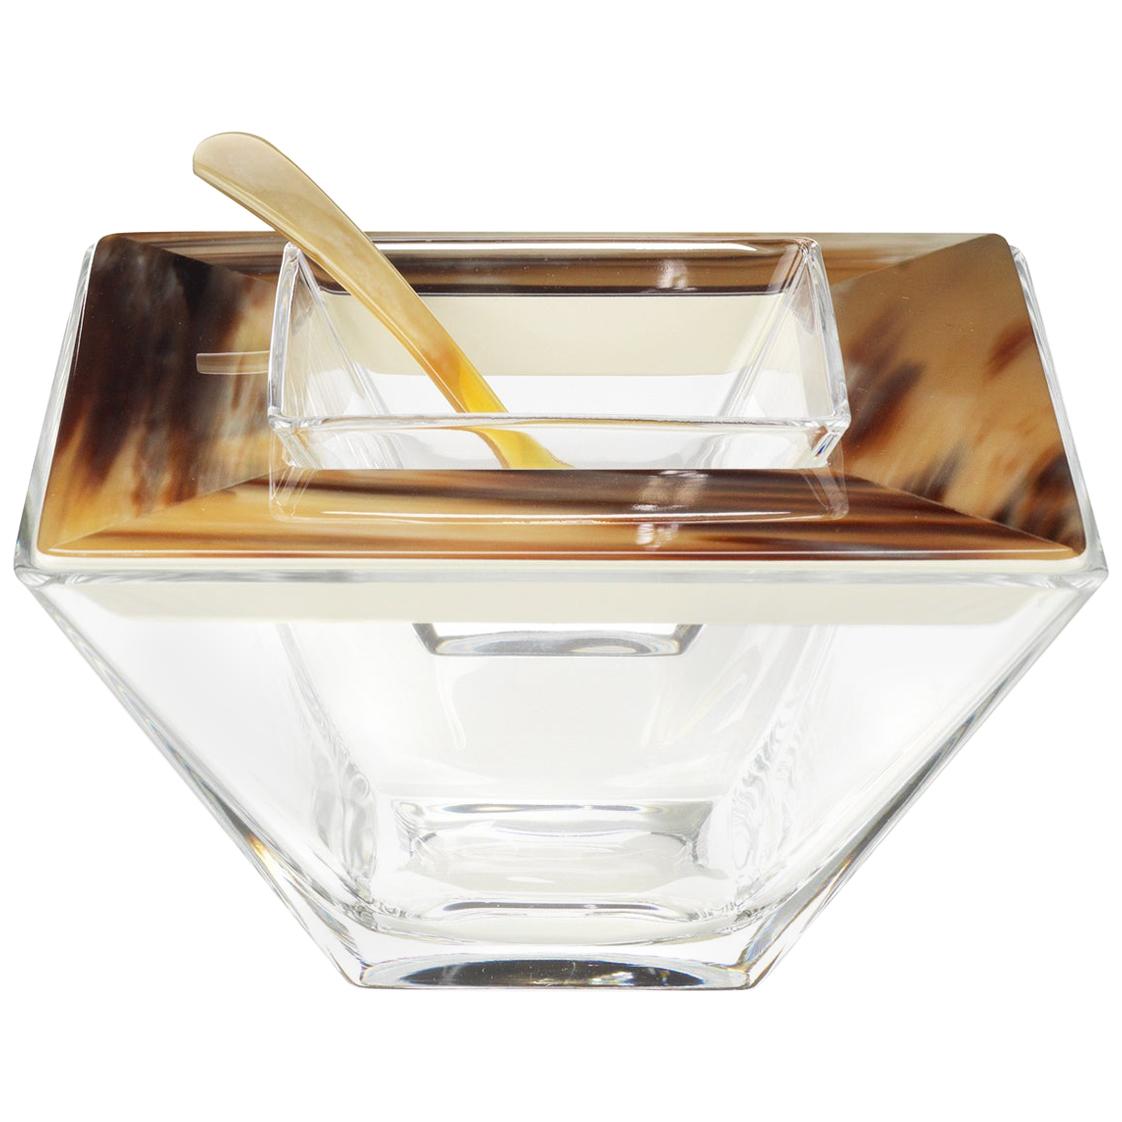 Caviar Bowl and Spoon in Venetian Glass, Corno Italiano & Lacquer Mod. 296 For Sale